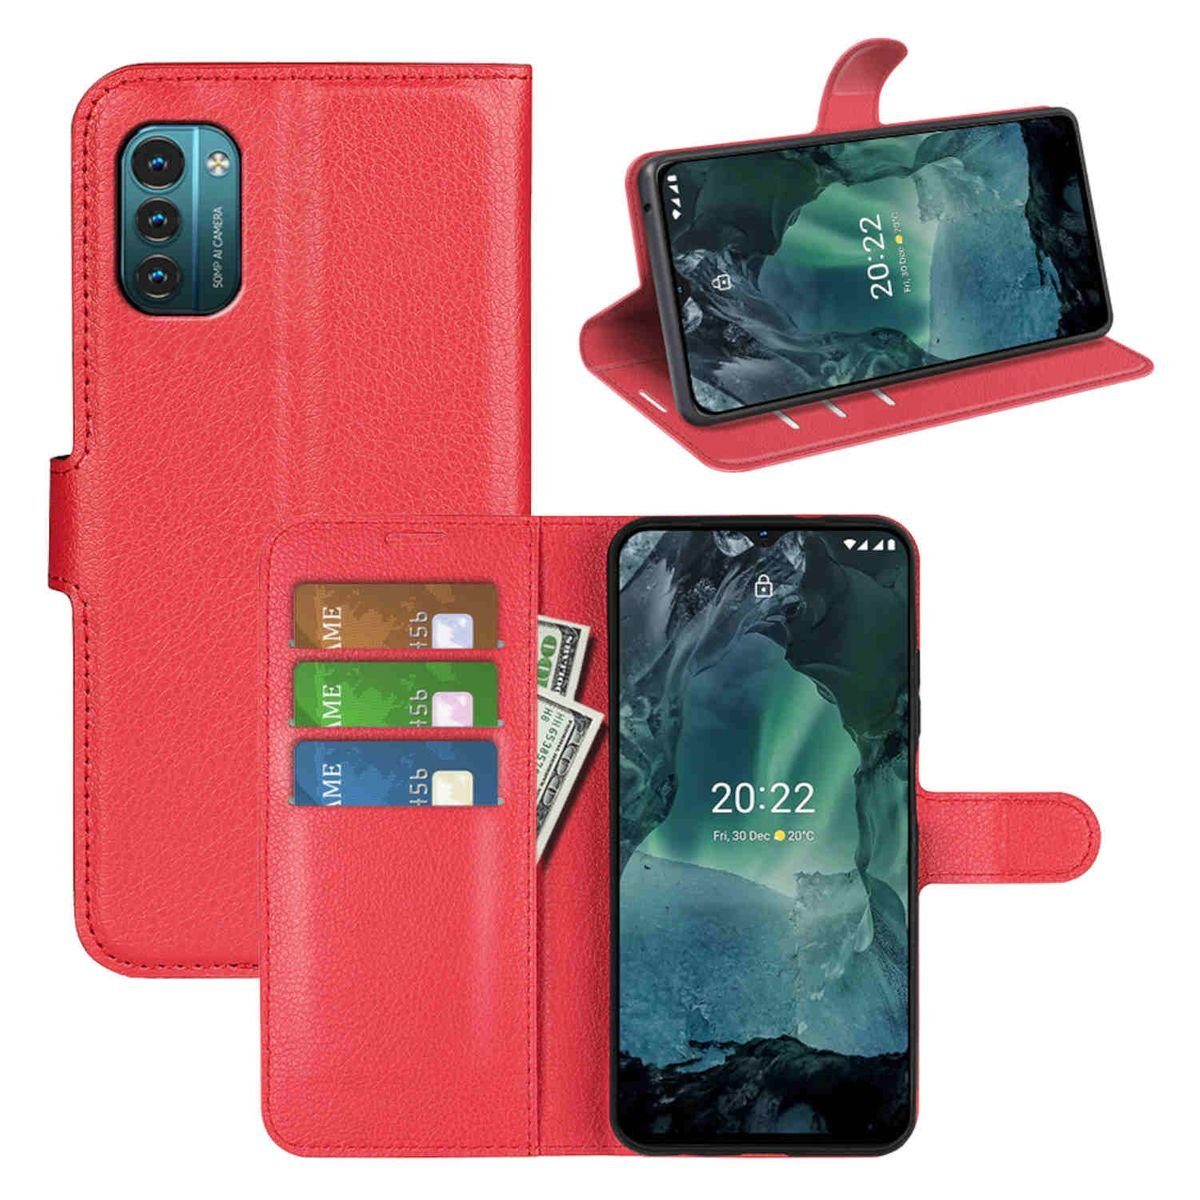 Wigento Handyhülle Für Nokia G21 / G11 Handy Tasche Wallet Premium Schutz  Hülle Case Cover Etuis Neu Zubehör